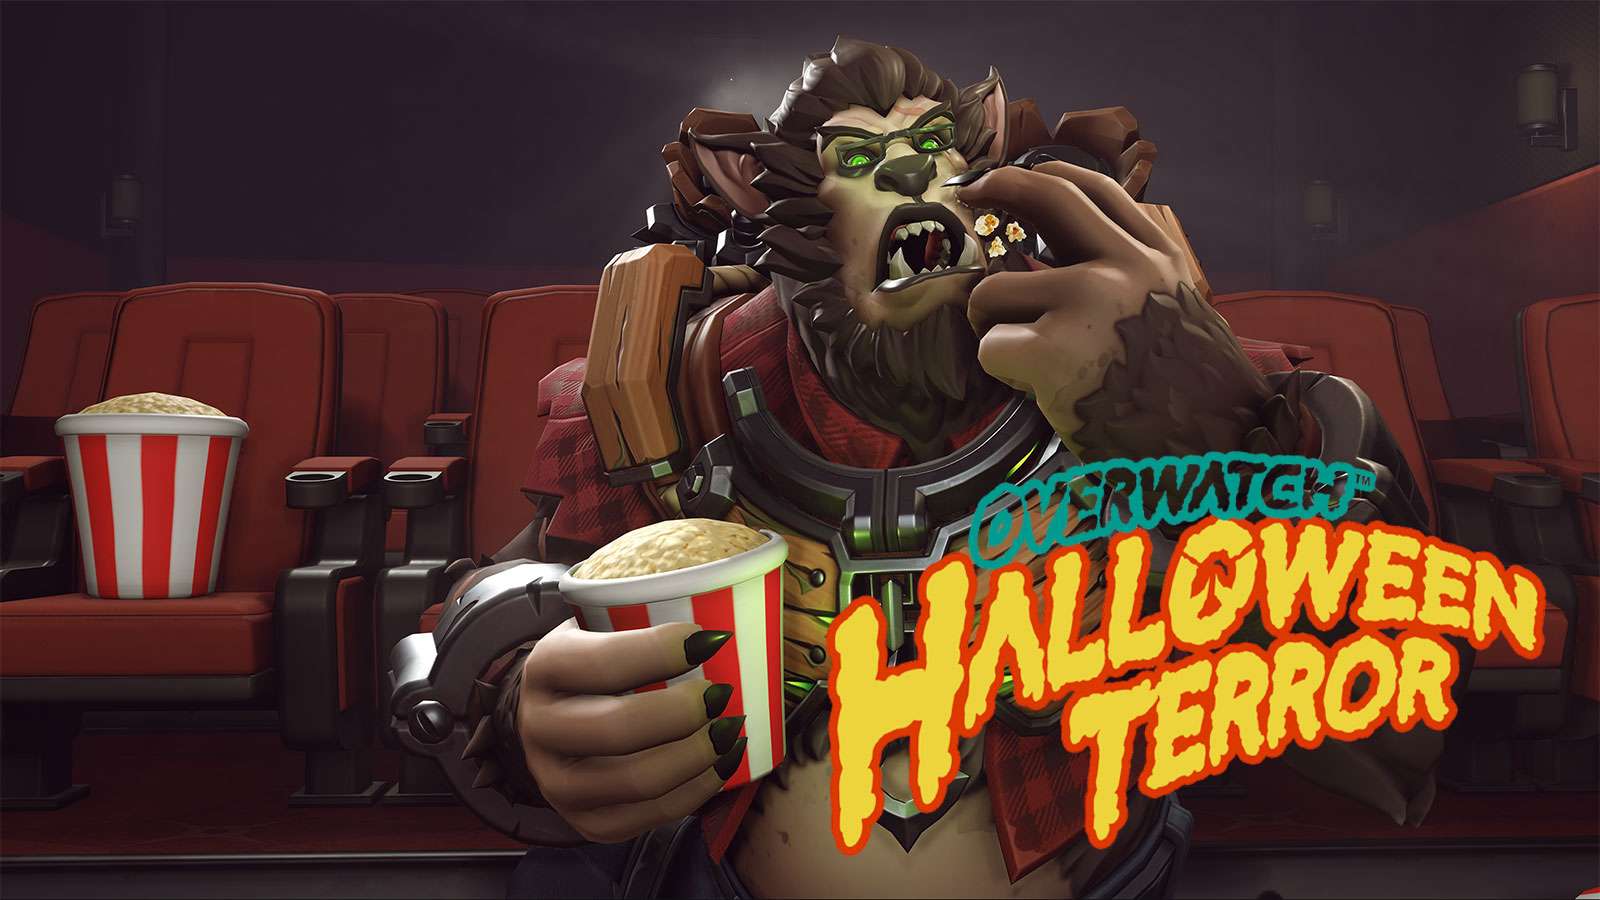 Winston Halloween Terror